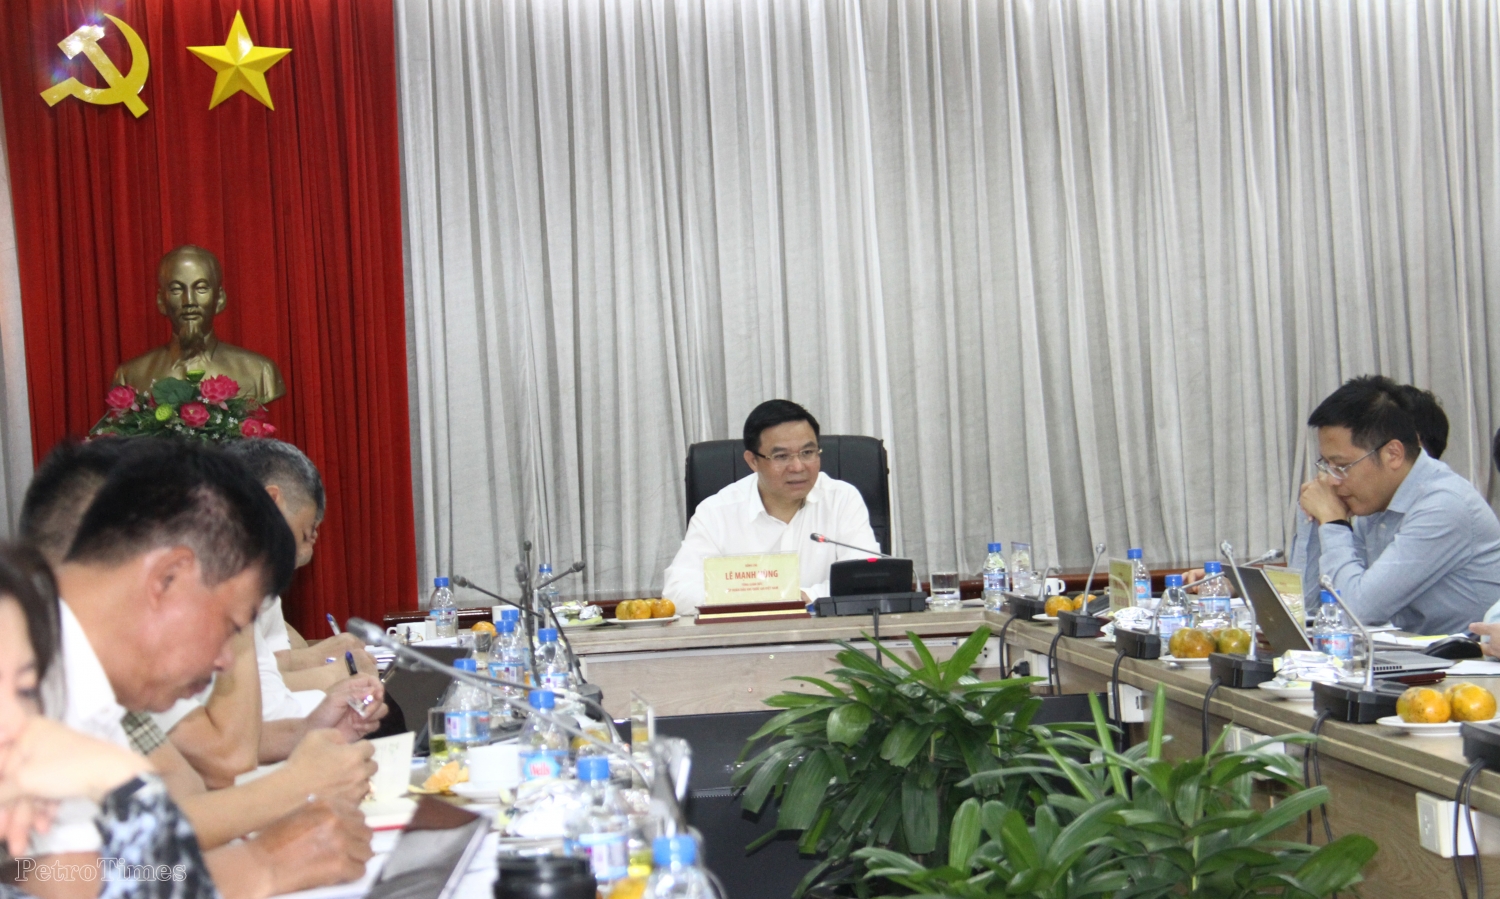 Tổng Giám đốc Petrovietnam Lê Mạnh Hùng làm việc với PVFCCo và PVCFC: Nỗ lực đảm bảo mục tiêu tăng trưởng trong năm 2023